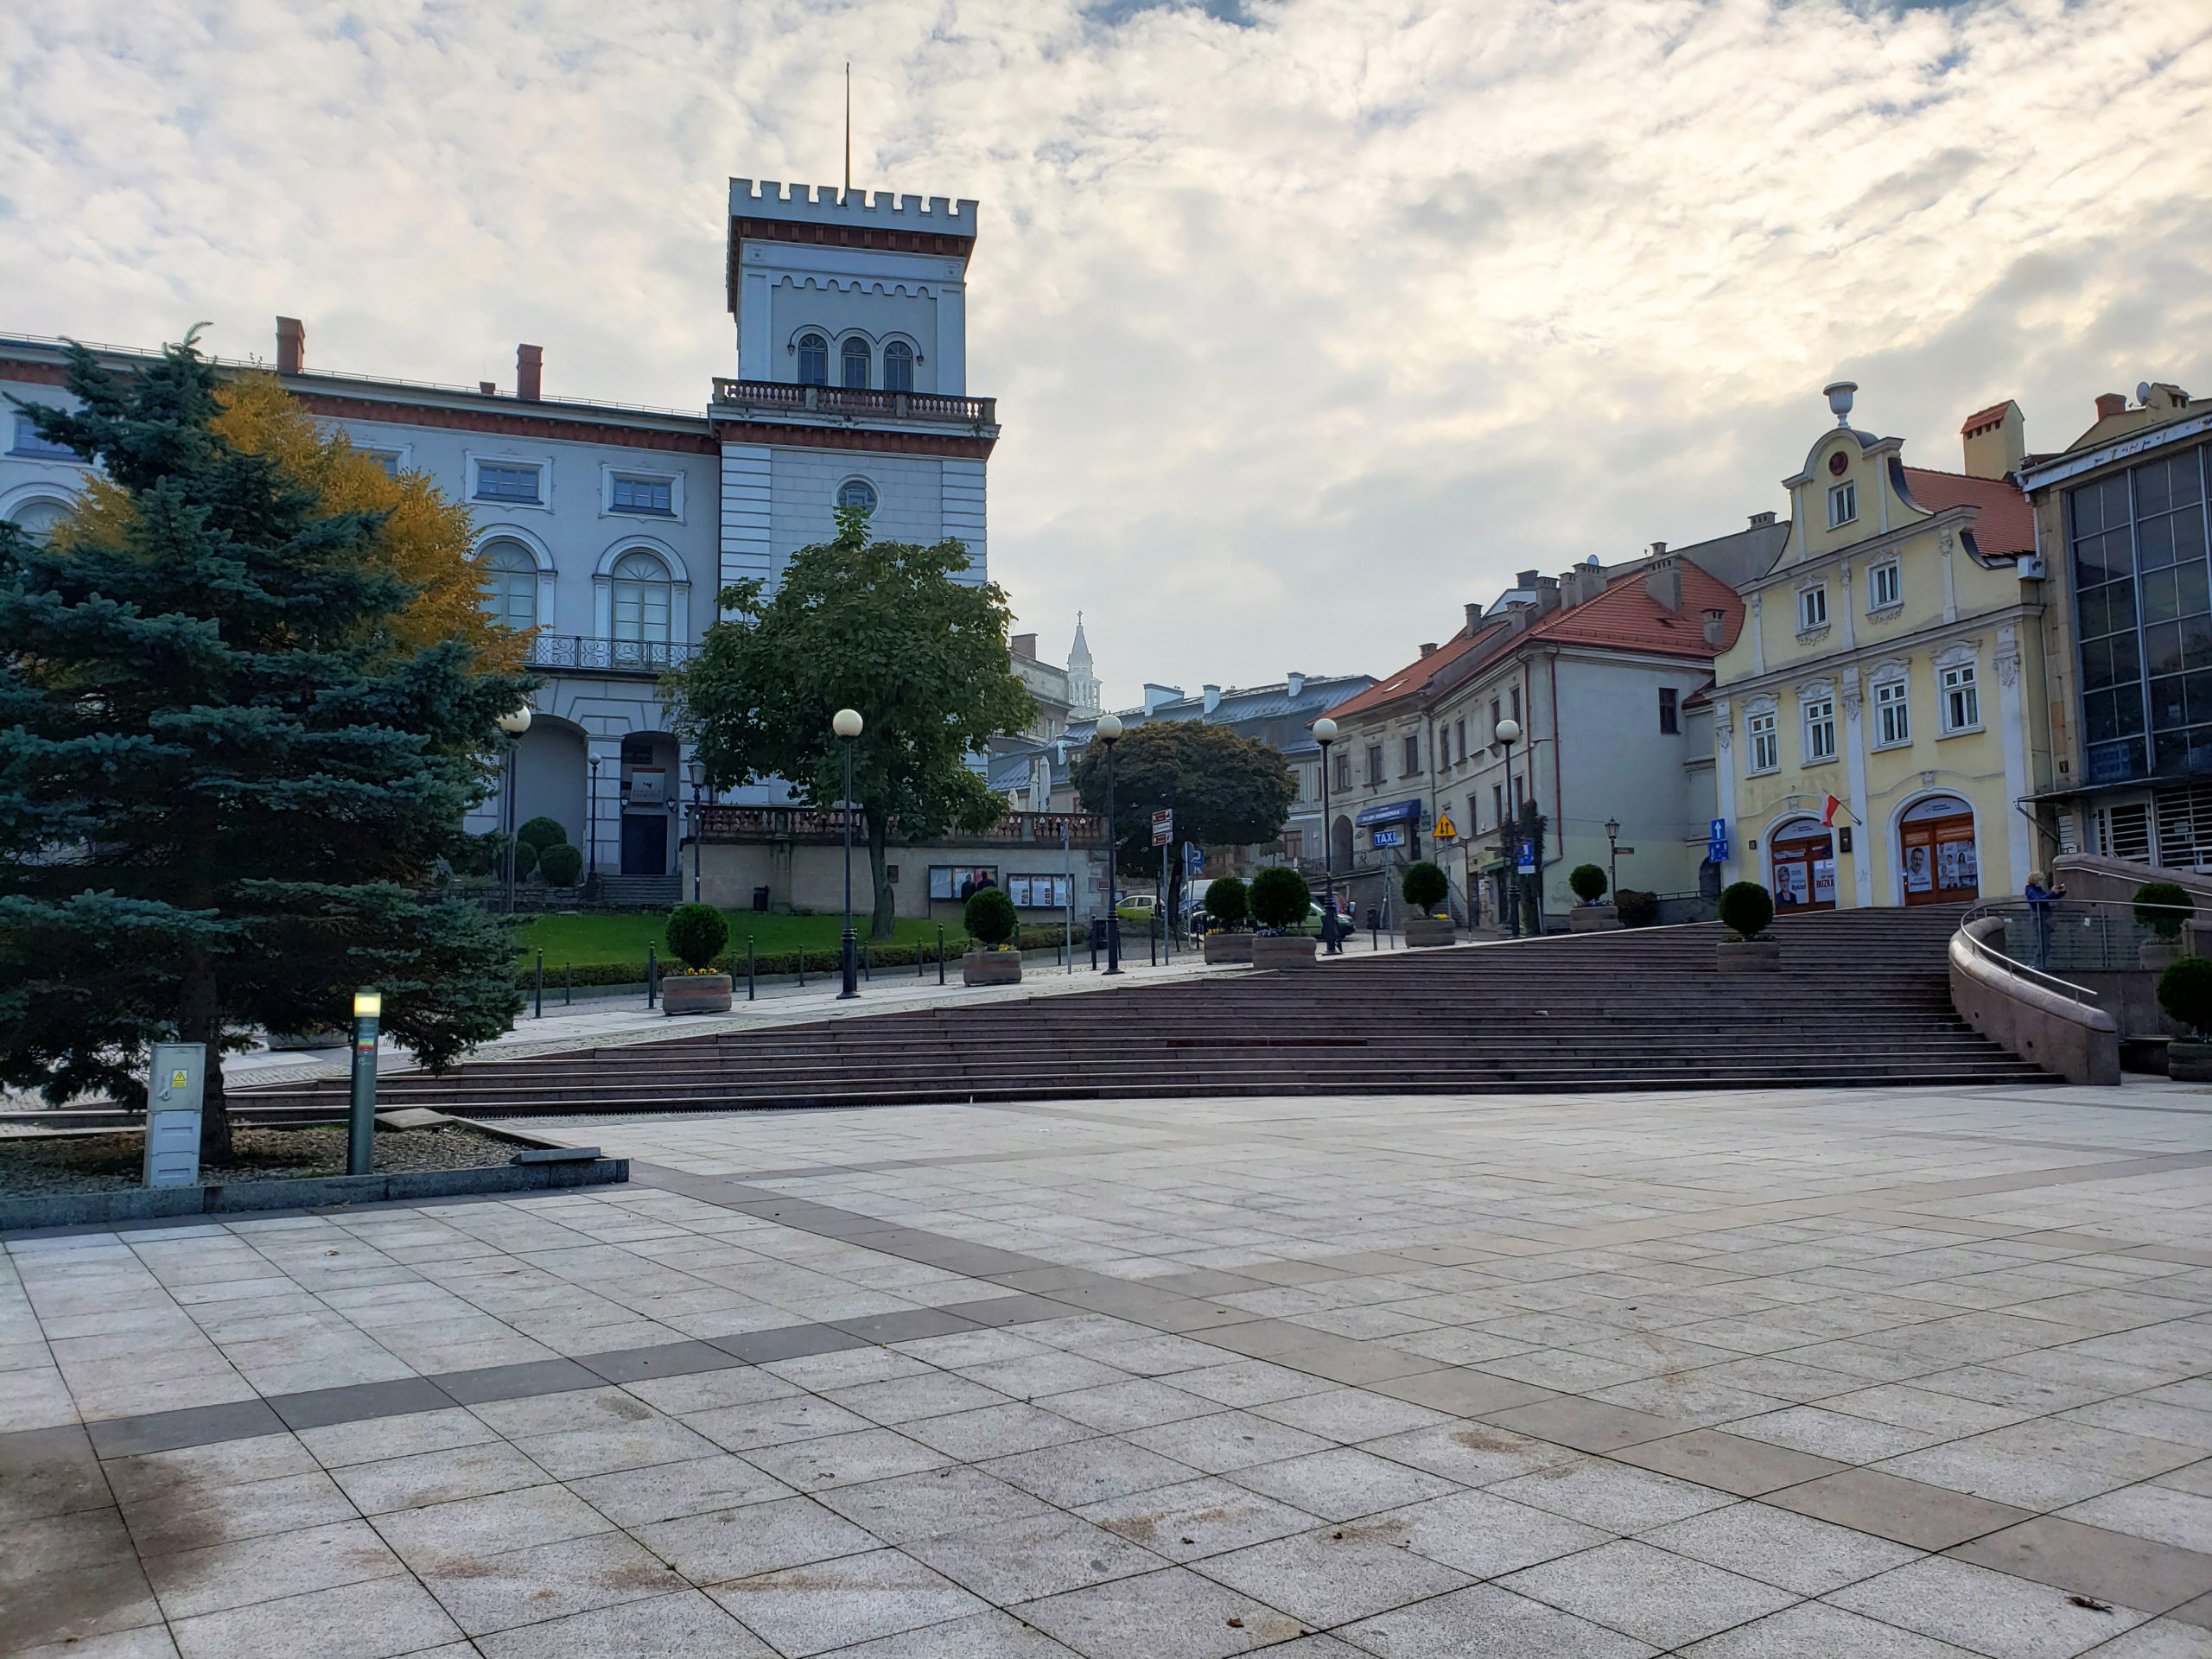 One Day In Bielsko-Biała - A Unique City Off The Beaten Path